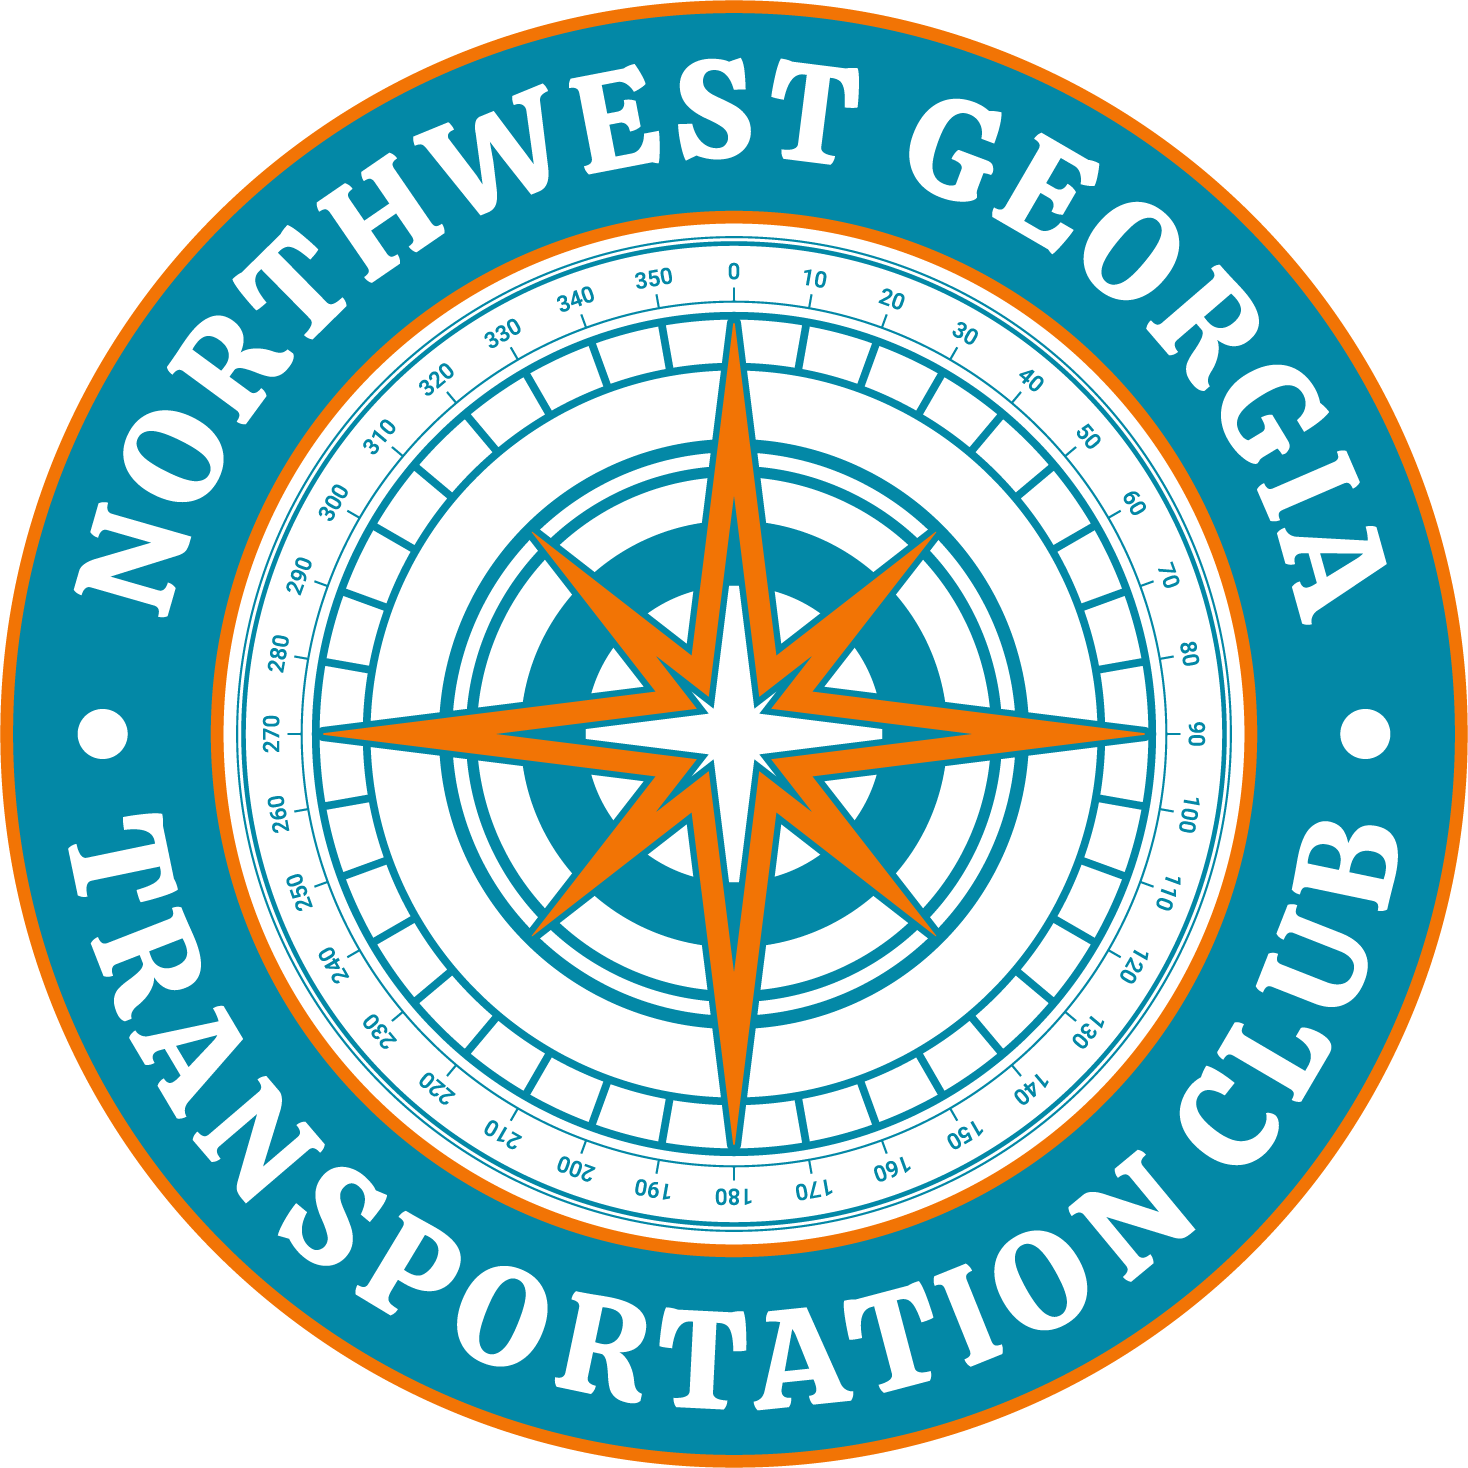 Northwest Georgia Transportation Club